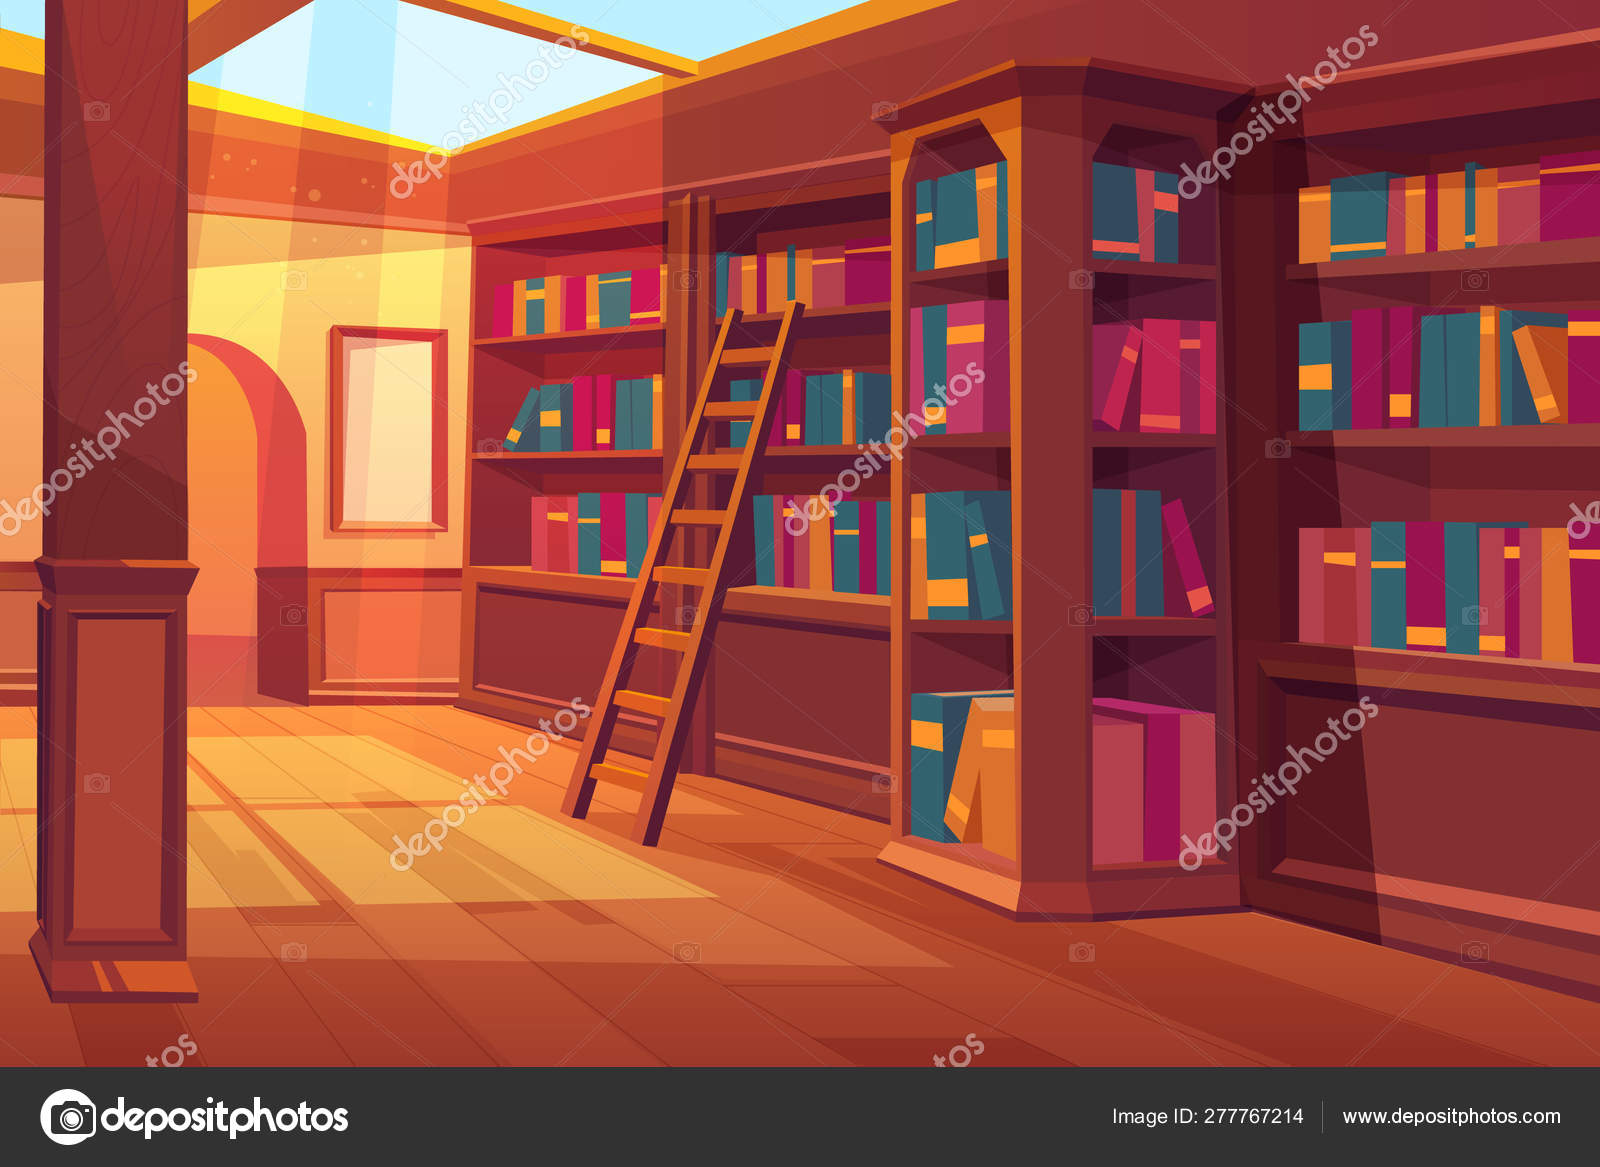 moderno biblioteca interior con estante para libros, estante para